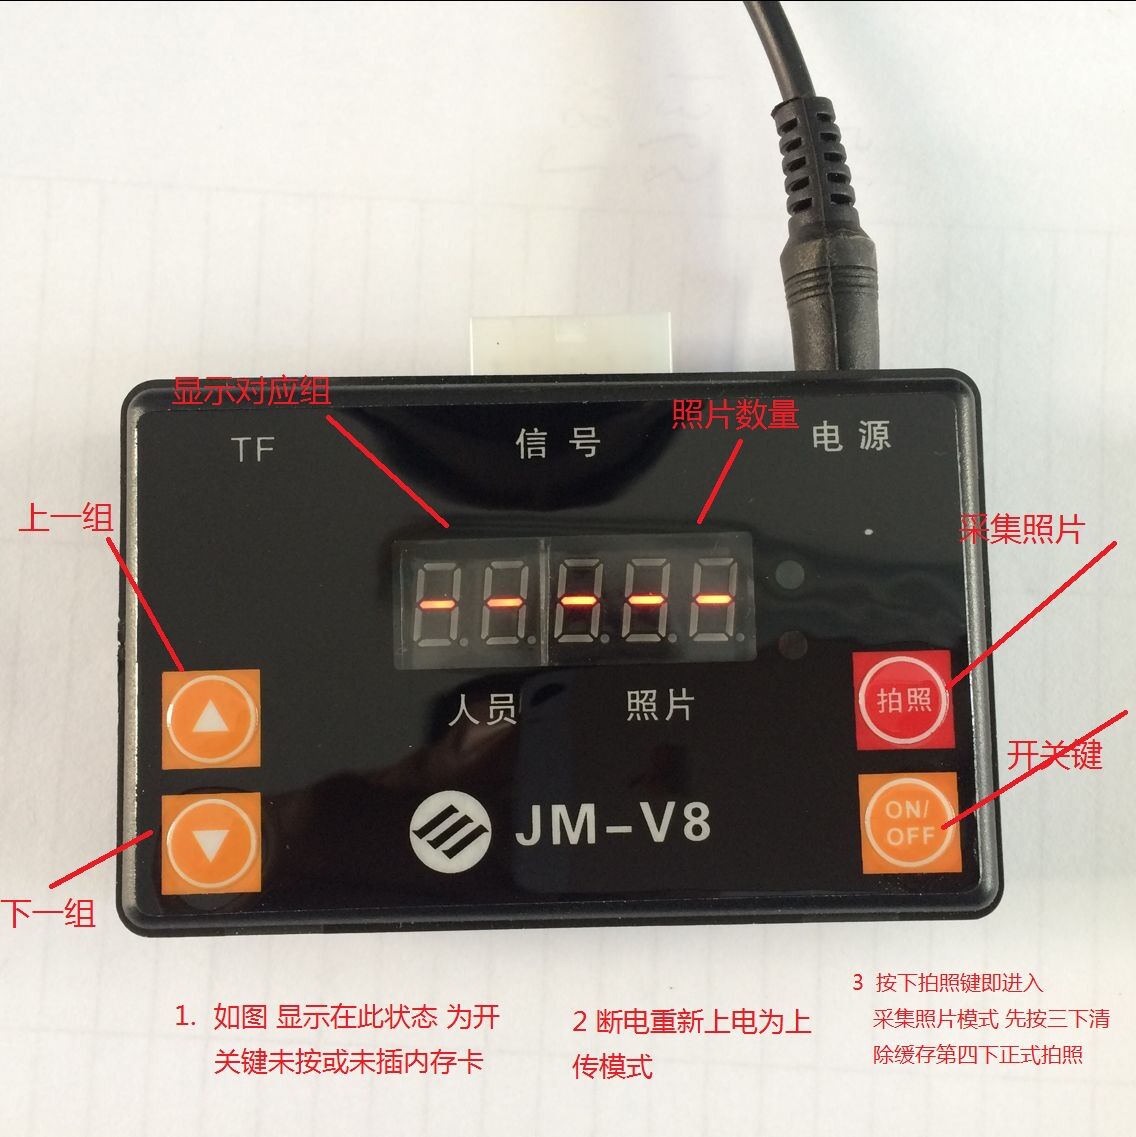 解除驾校教练车摄像头电子眼抓拍照片用的JM-V8图片取像机